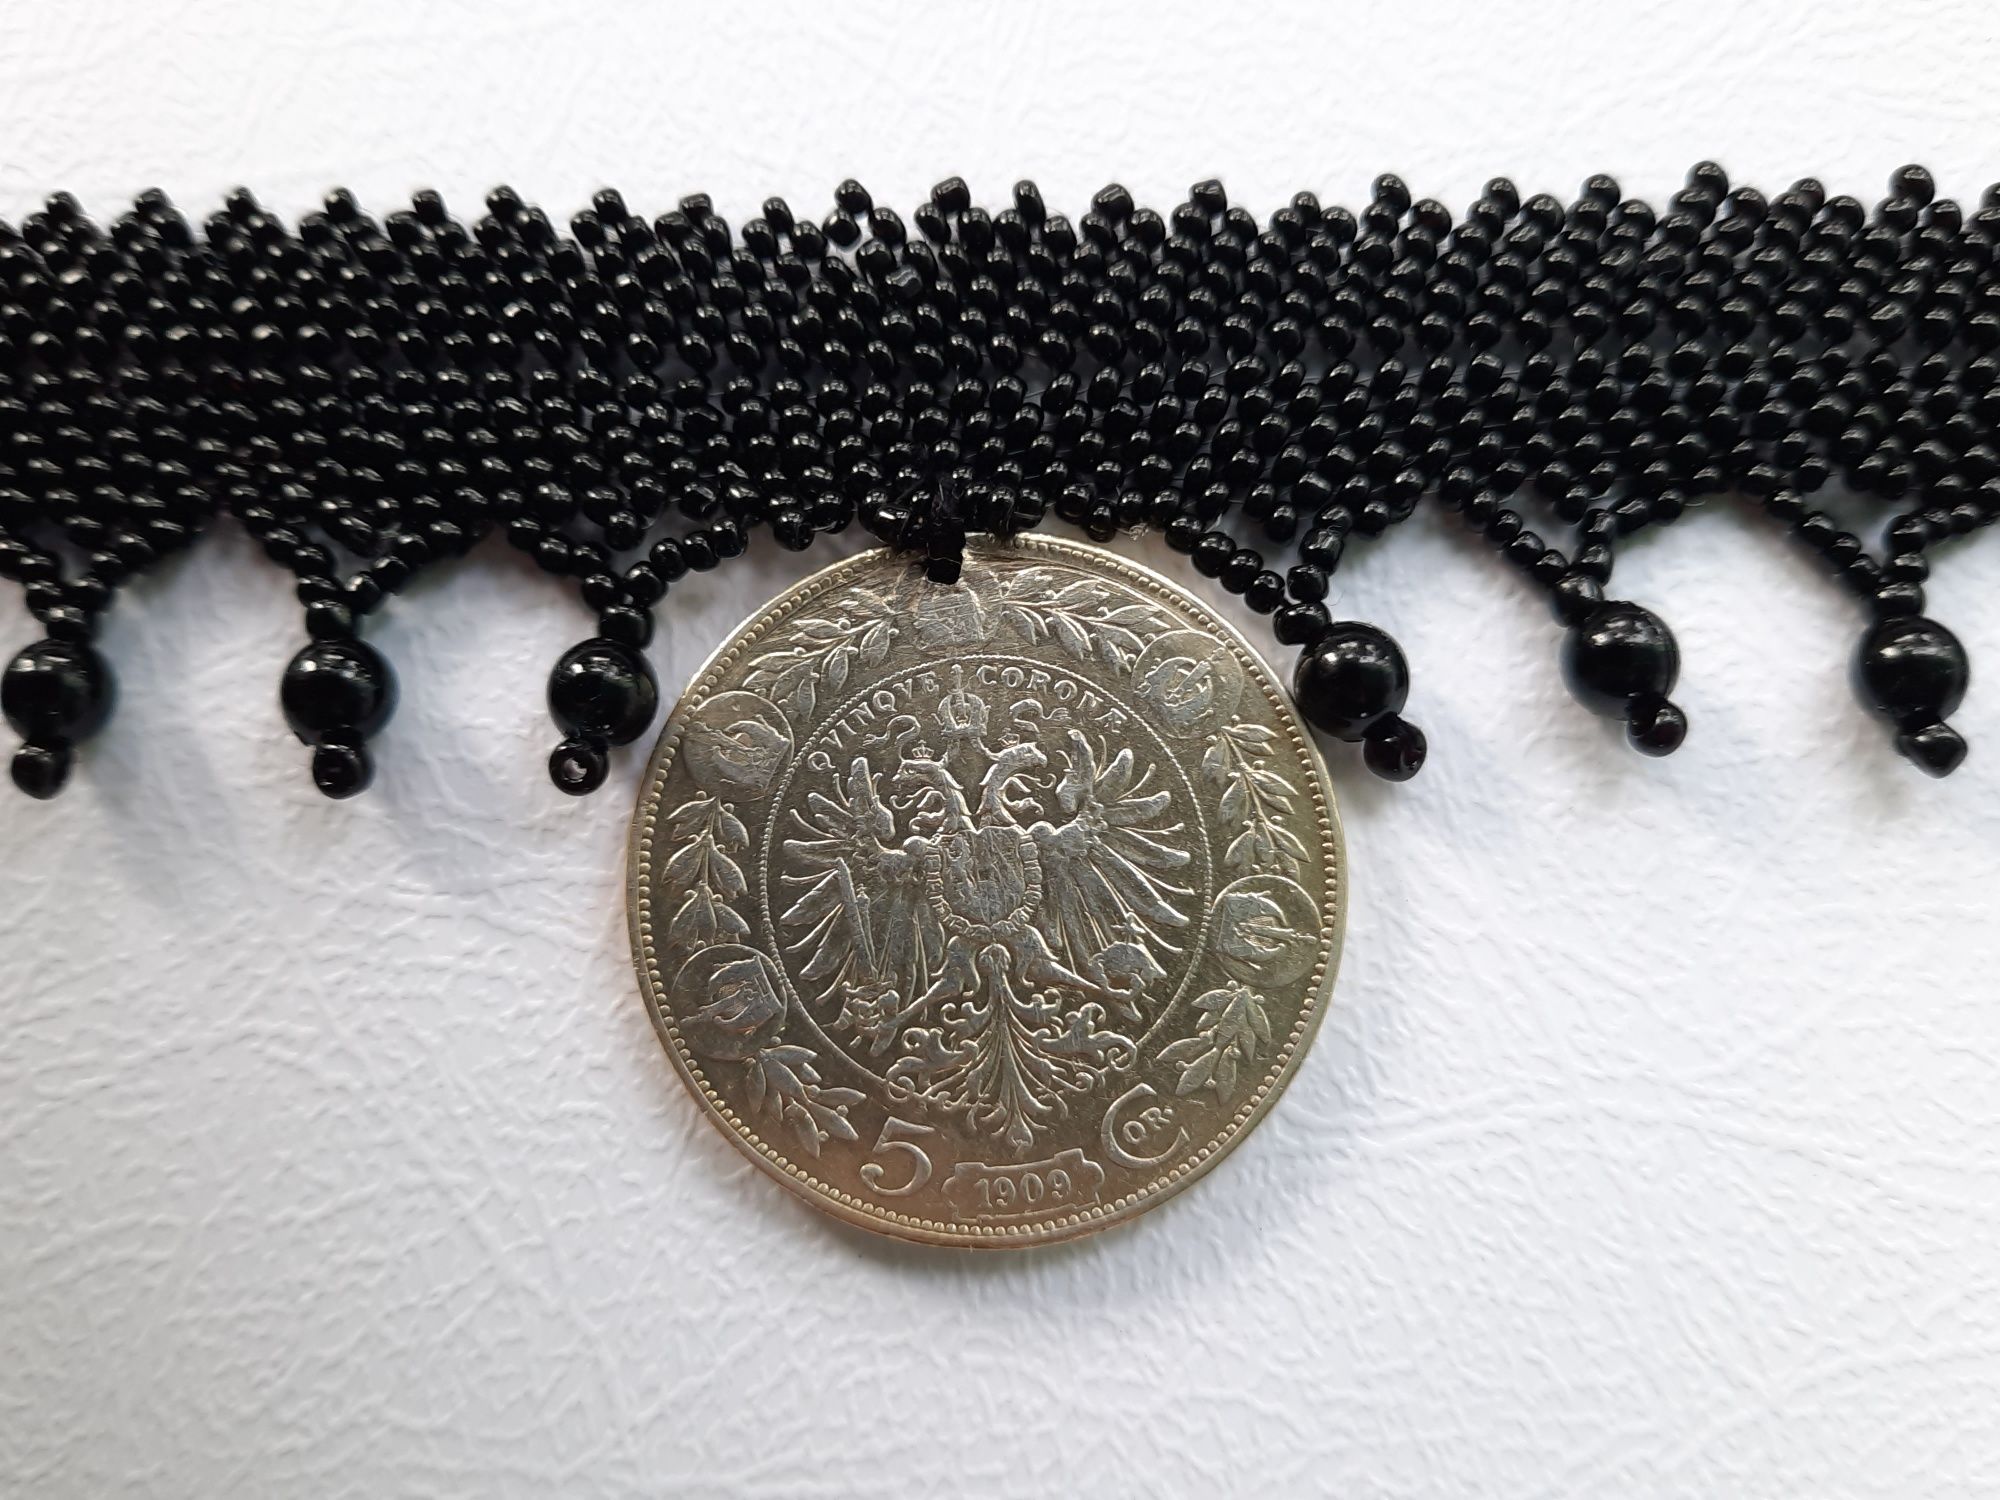 Zgardan din margele, cu moneda de argint - 5 Corona 1909 - G3680